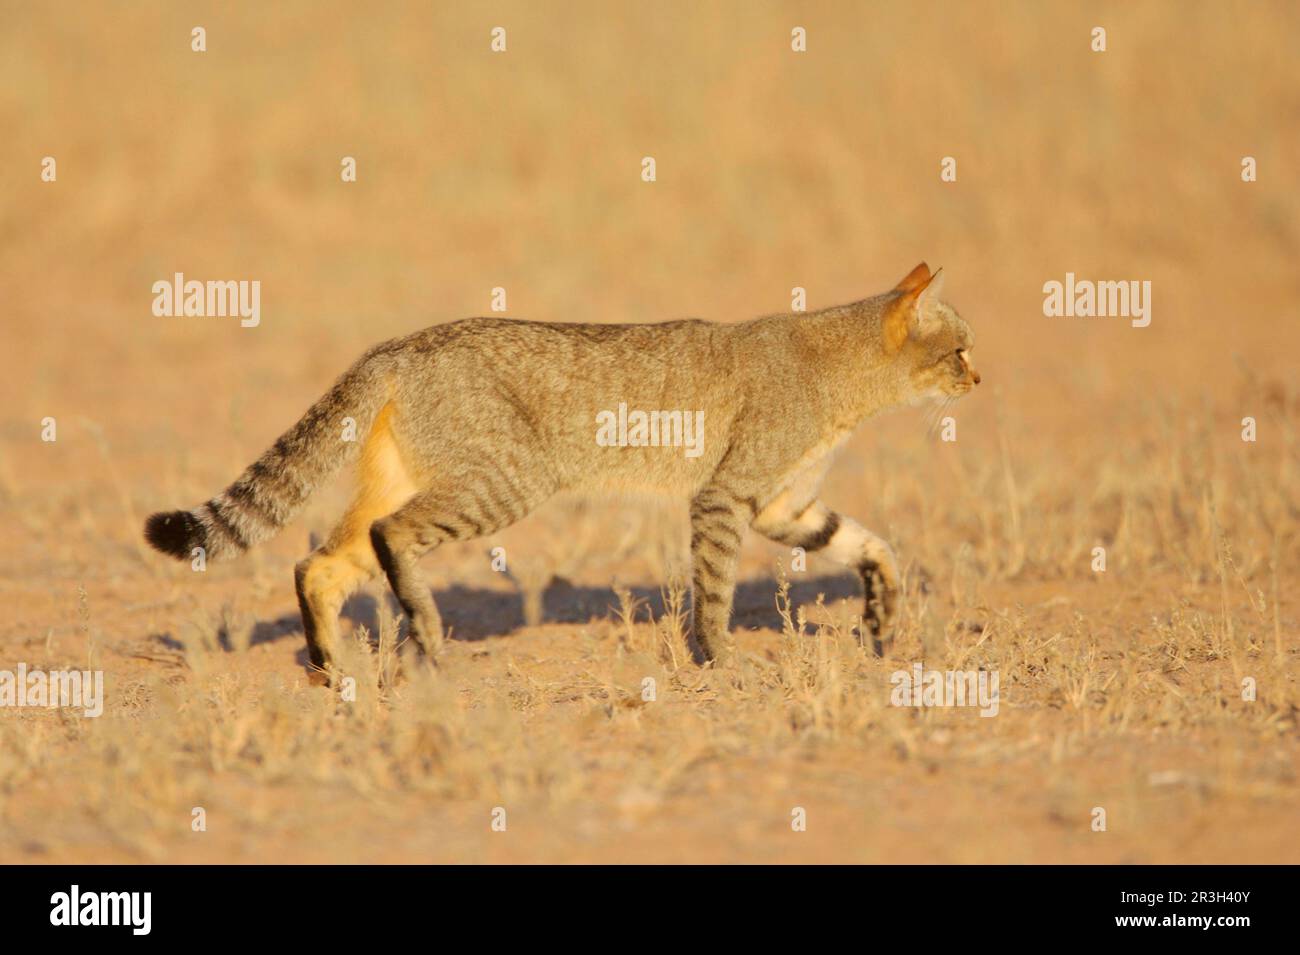 African wildcats (Felis silvestris lybica), Falcon cat, Falcon cats, Predatory cats, Predators, Mammals, Animals Wild Cat adult, walking in desert Stock Photo